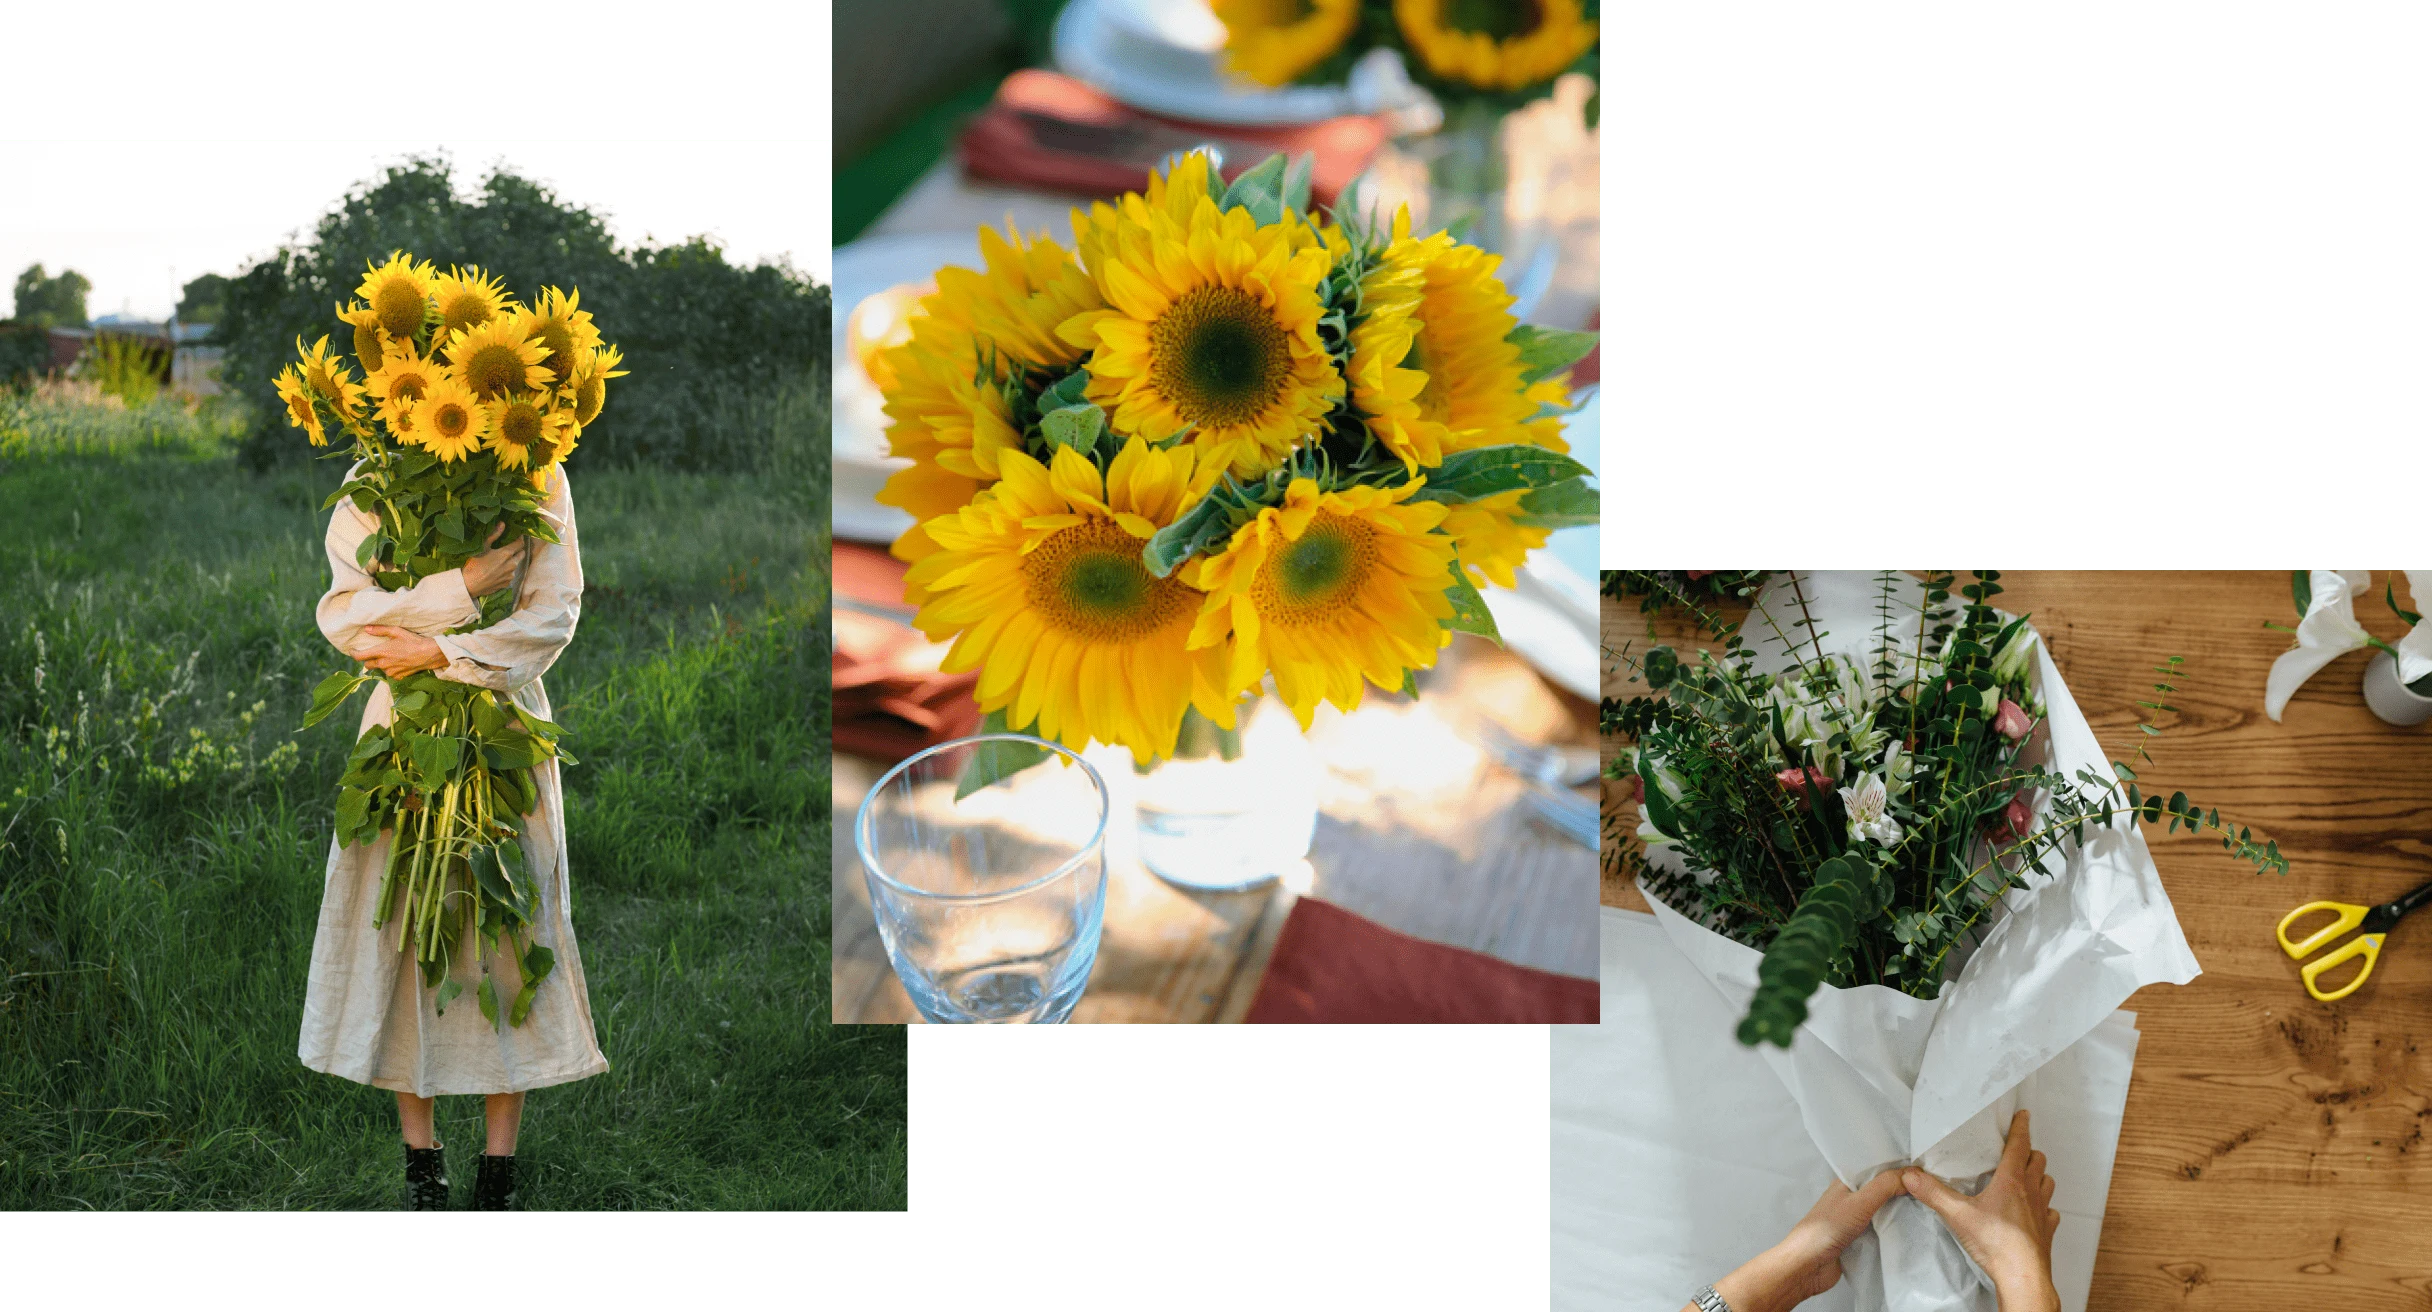 Três fotos que retratam arranjos de flores amarelas e folhagem verde